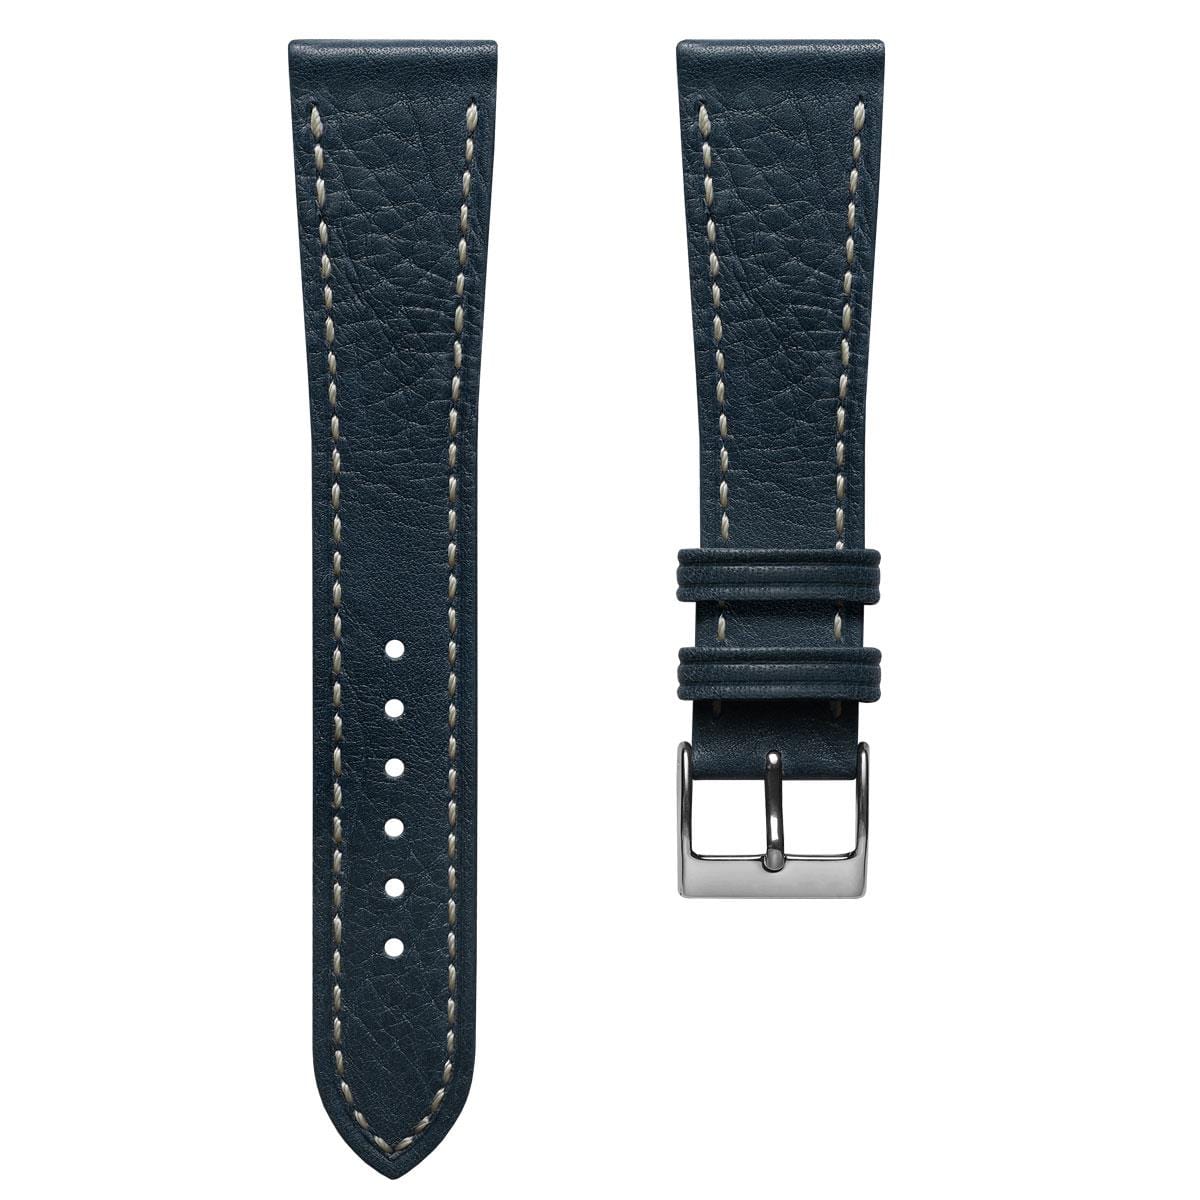 Castile Handmade Spanish Leather Watch Strap - Dark Blue